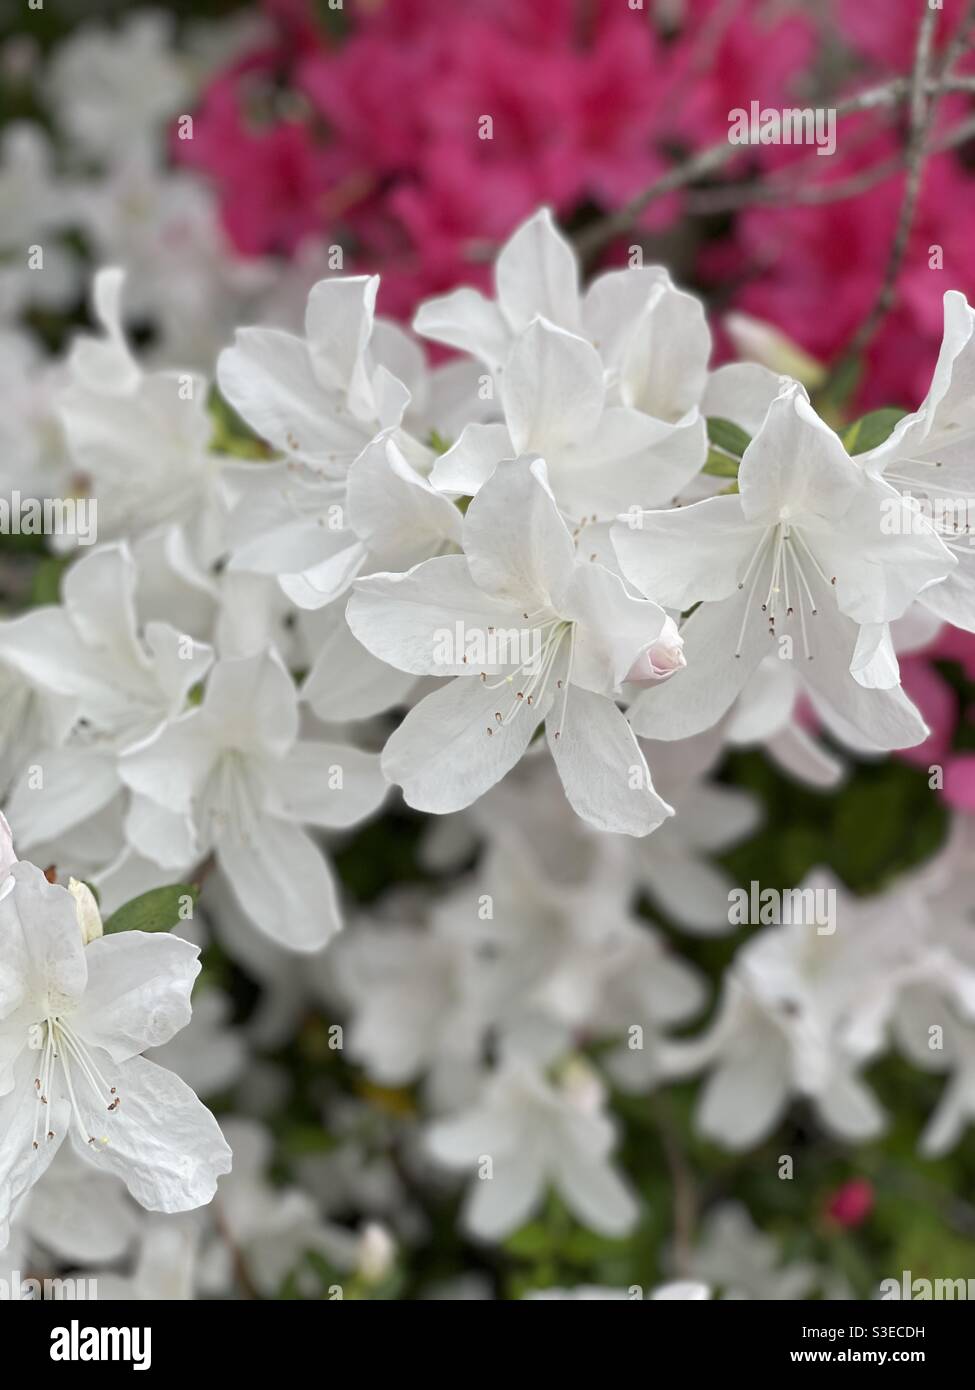 White and pink azaleas Stock Photo